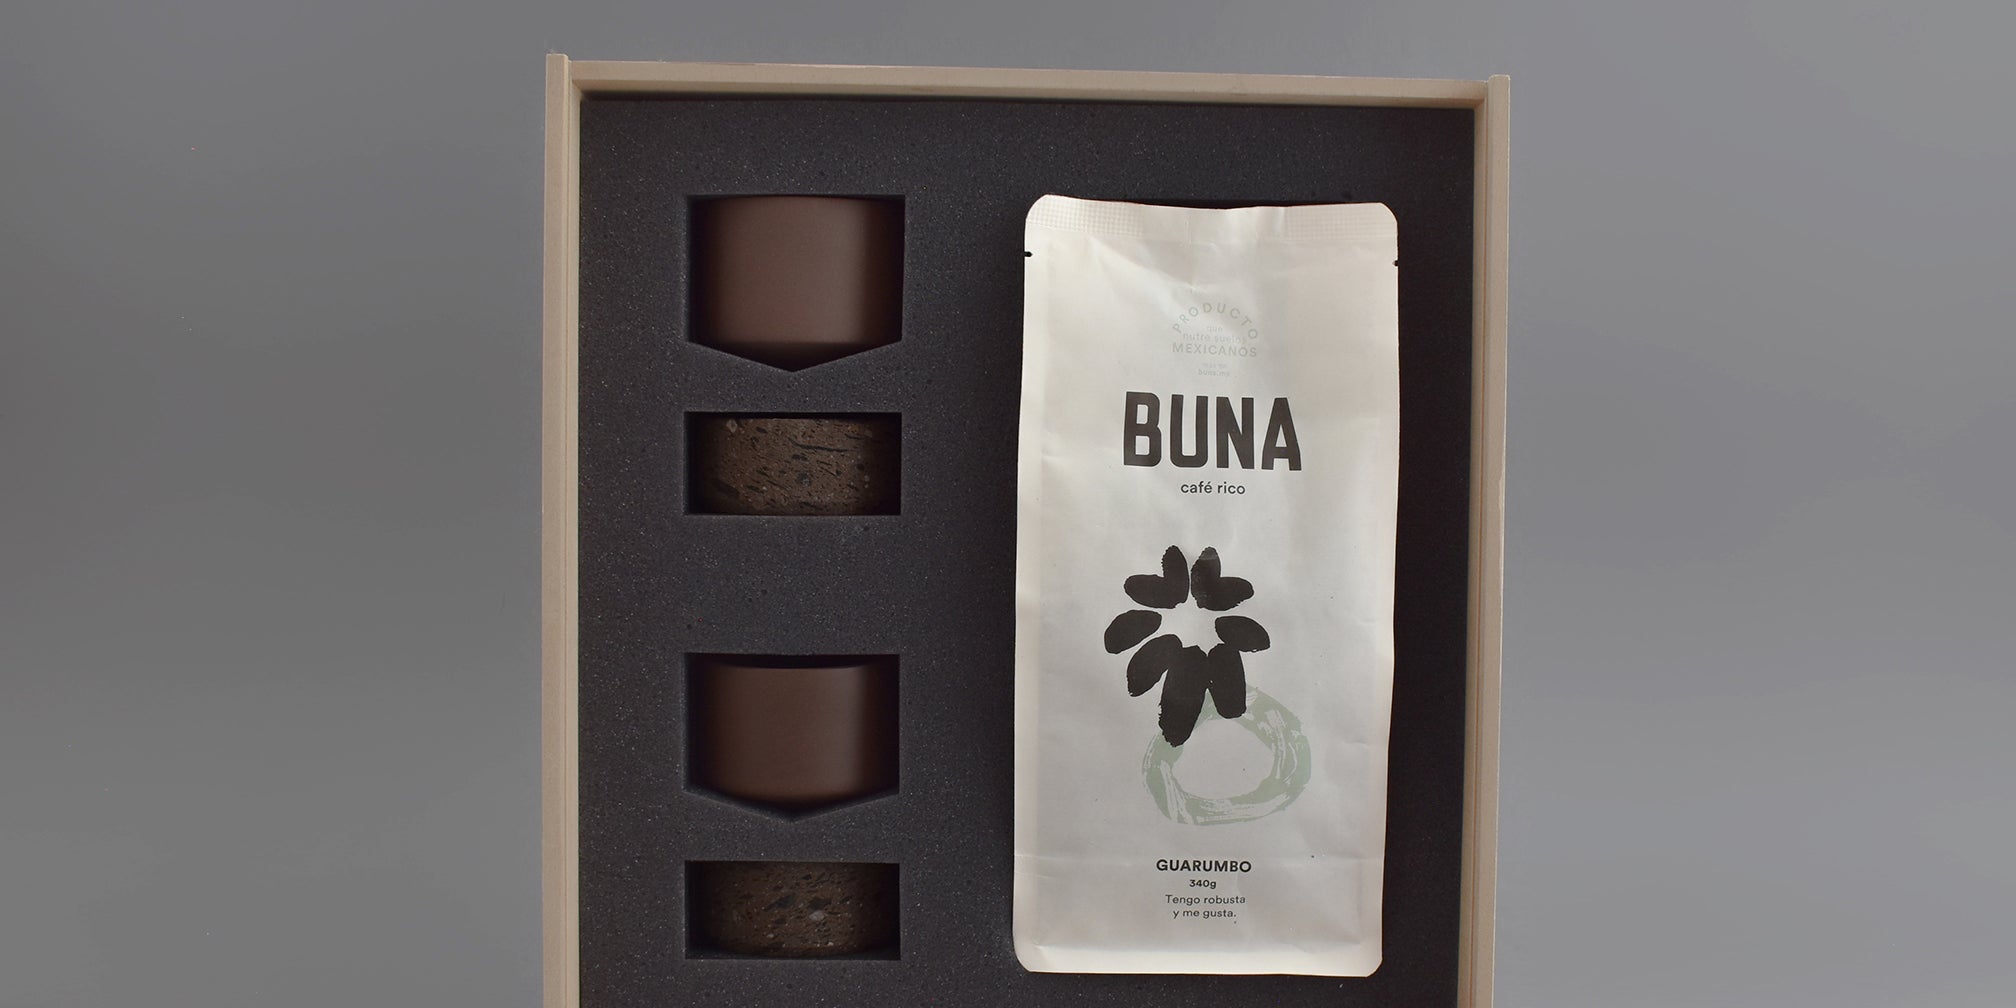 Caja de regalo MDF con dos vasos de cerámica café para espresso, se incluye una bolsa de café Buna